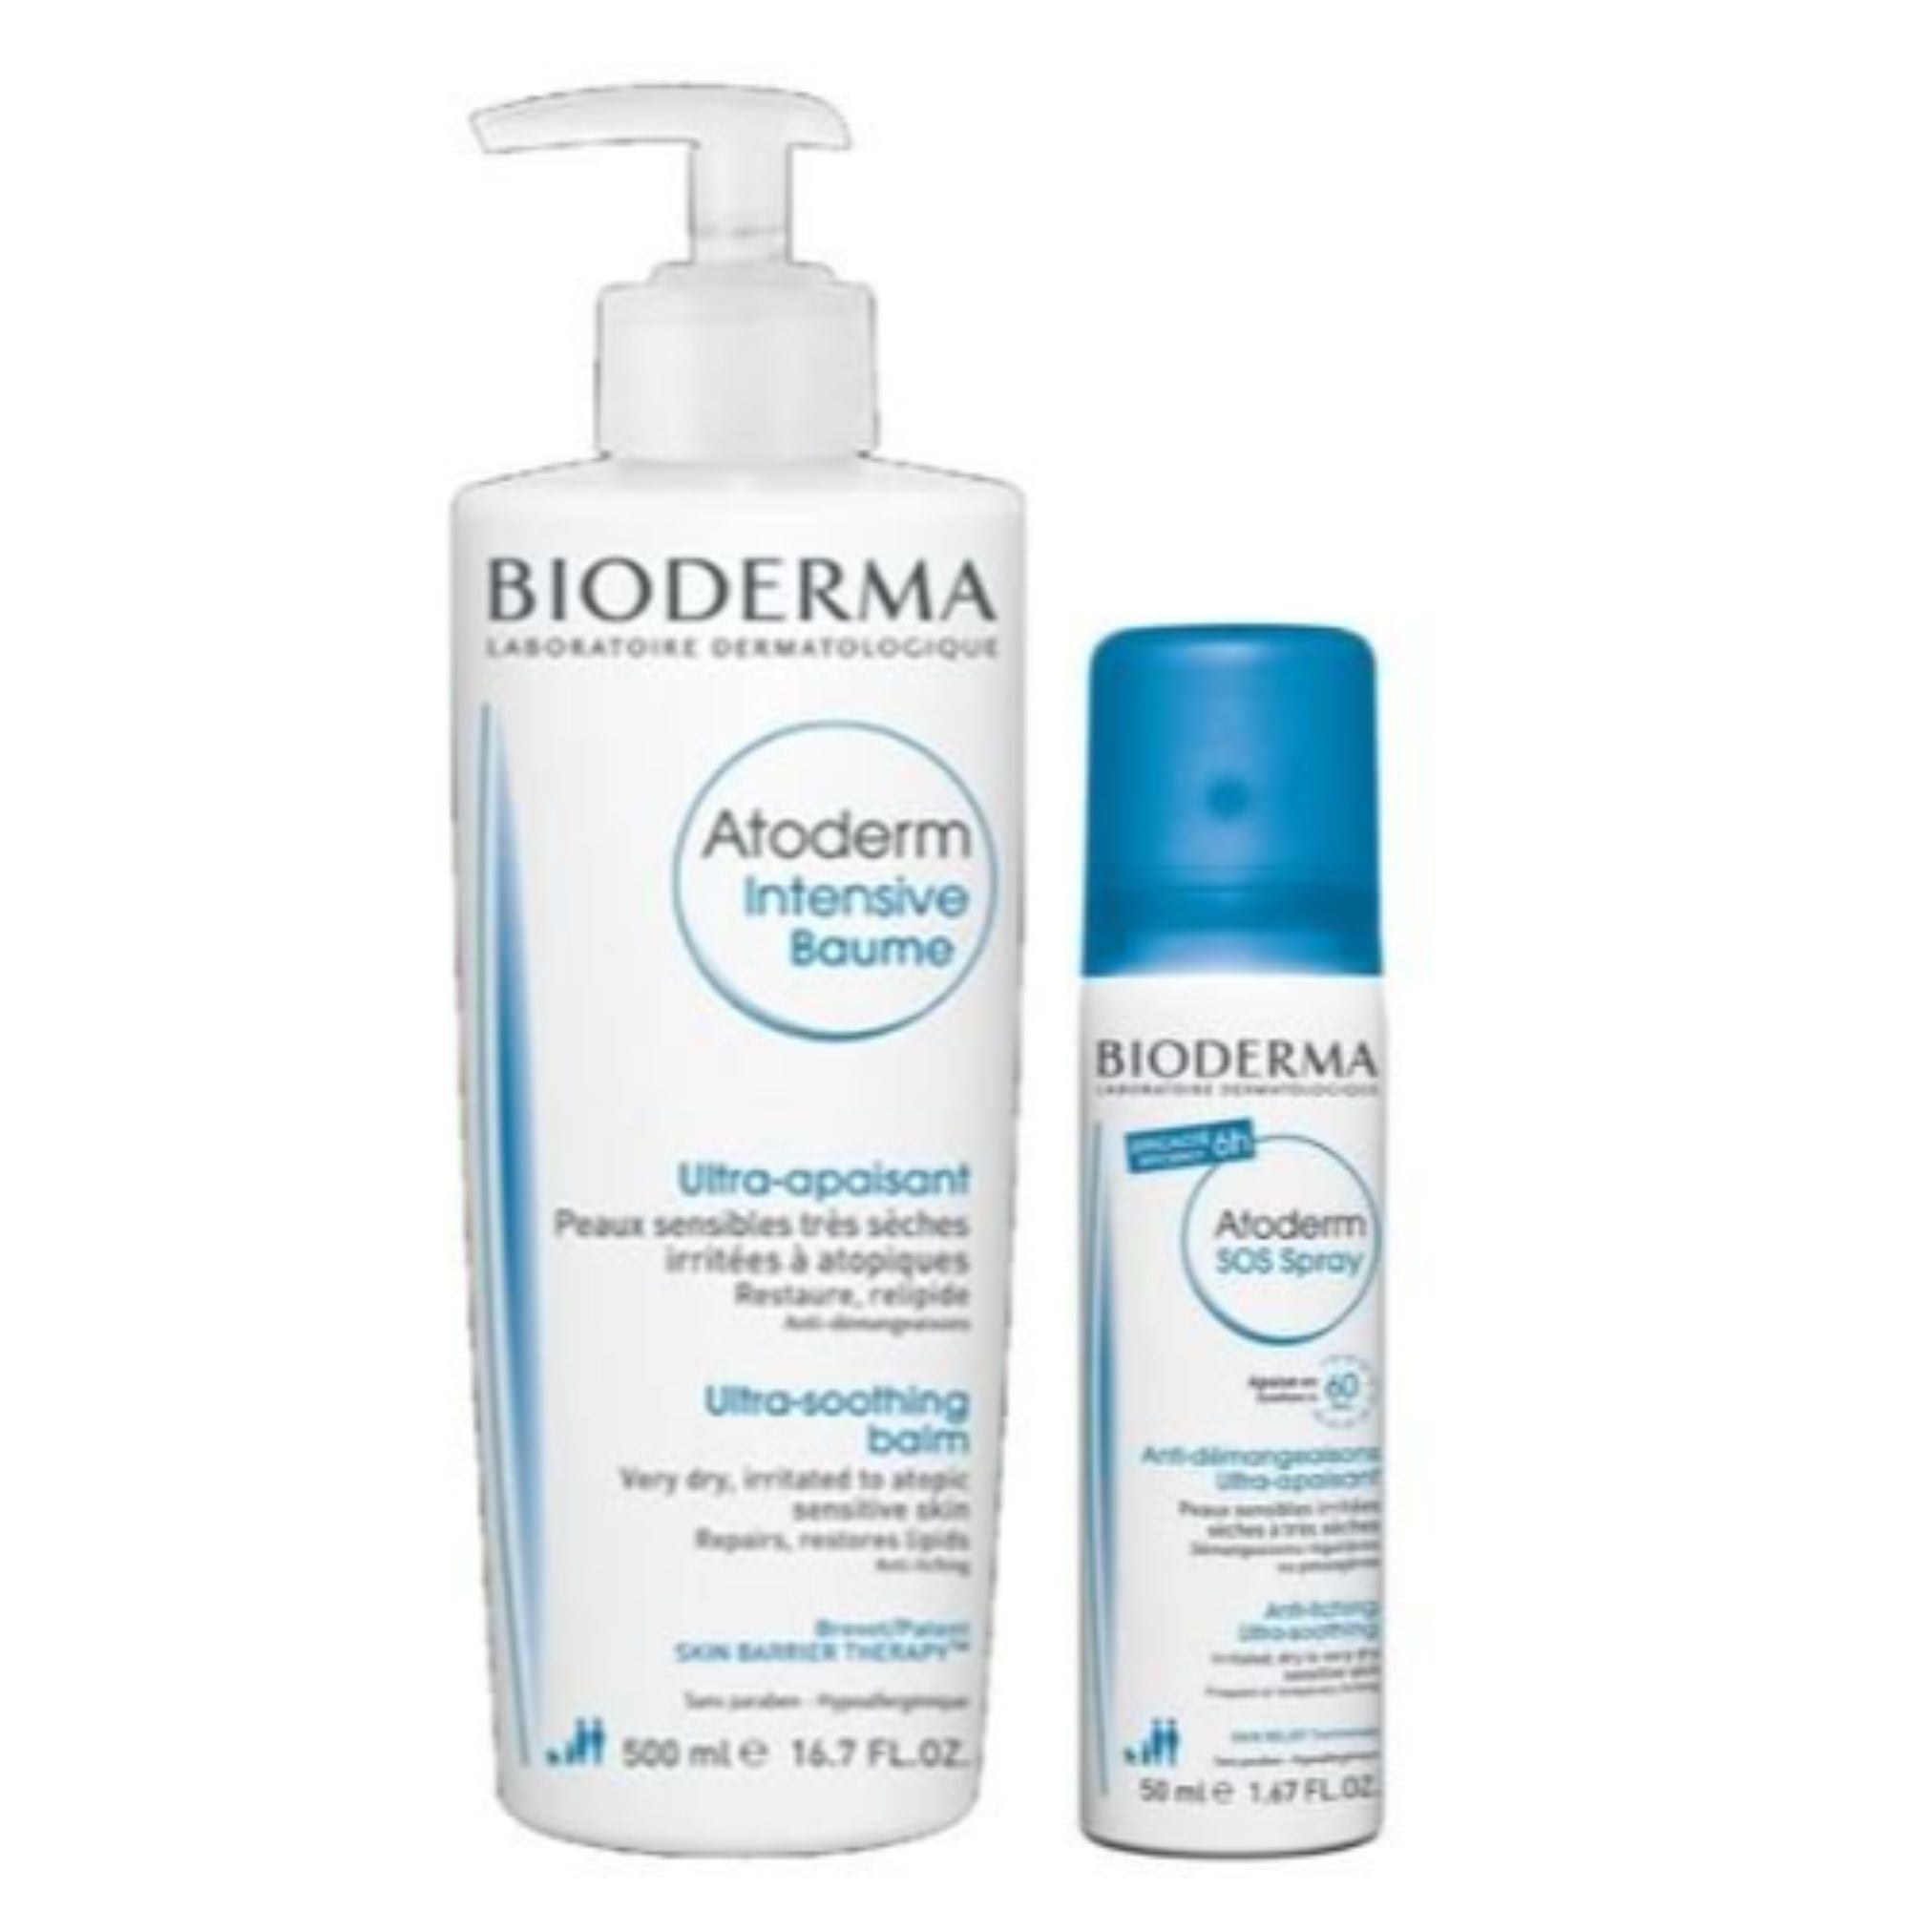 Bioderma Promo Pack: Bioderma Atoderm Intensive Baume 500 ml + Bioderma Atoderm SOS Spray Anti-Itching 50ml